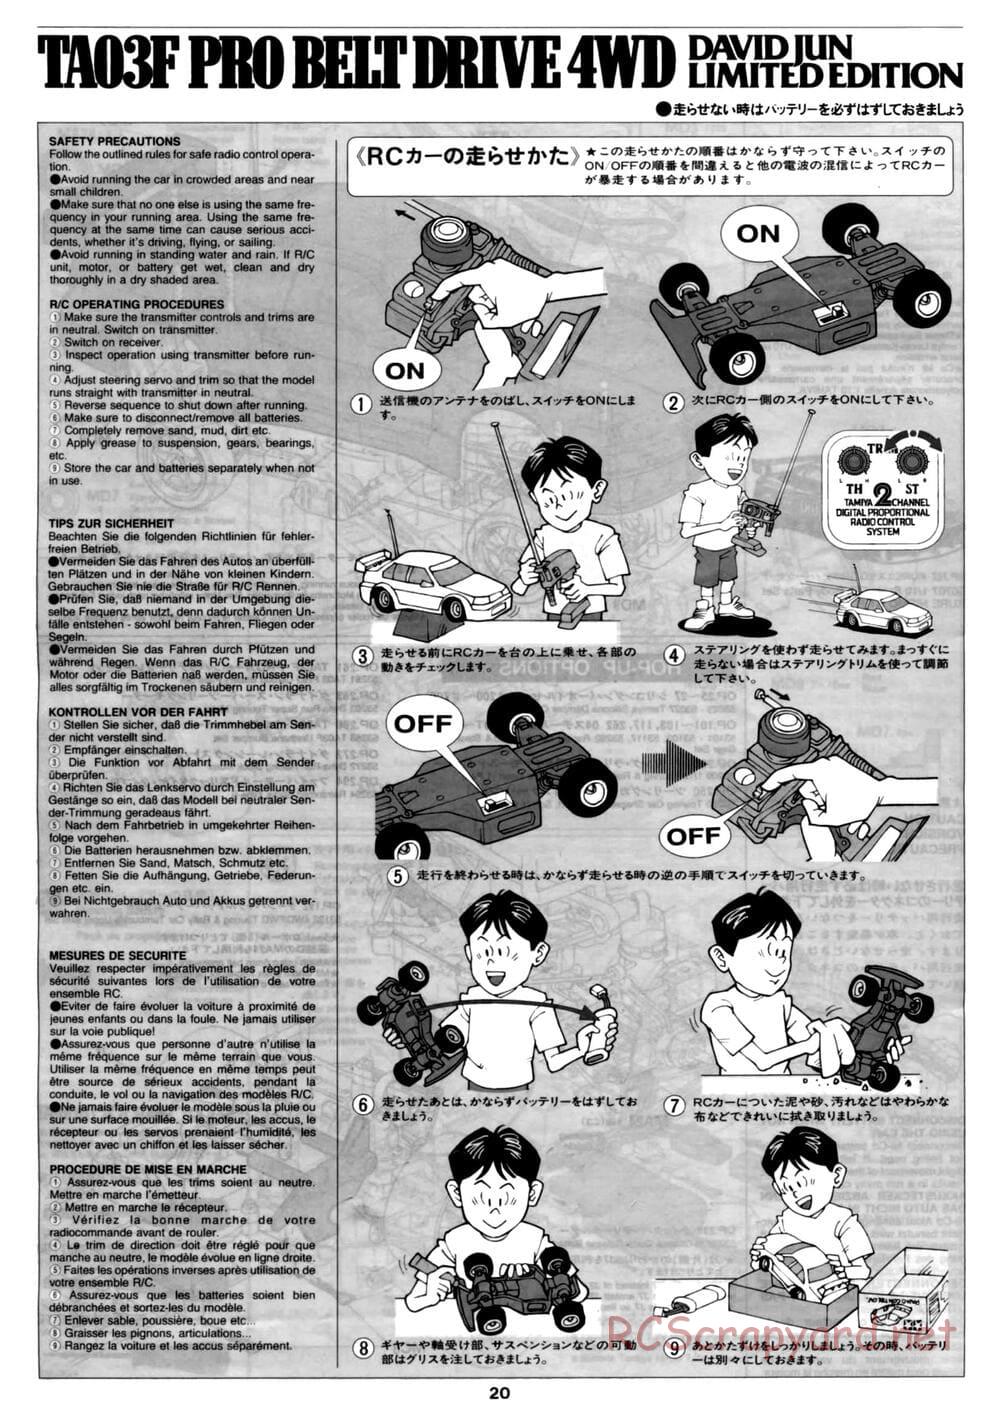 Tamiya - David Jun TA03F Pro Chassis - Manual - Page 20